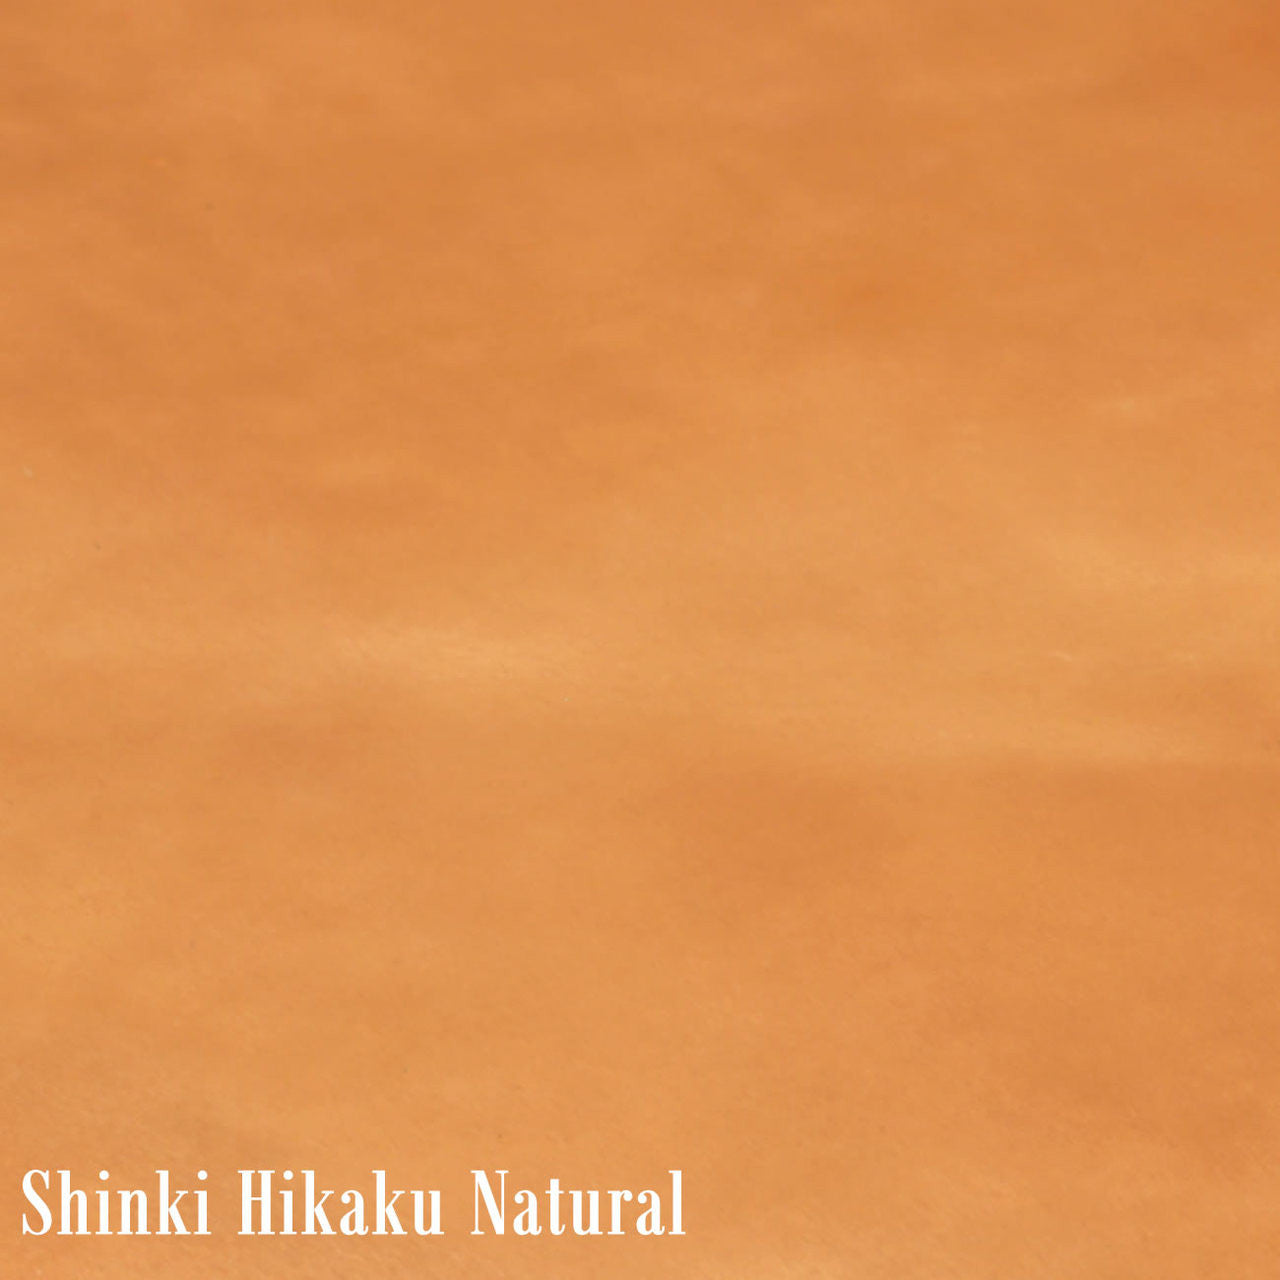 Shinki Hikaku Natural